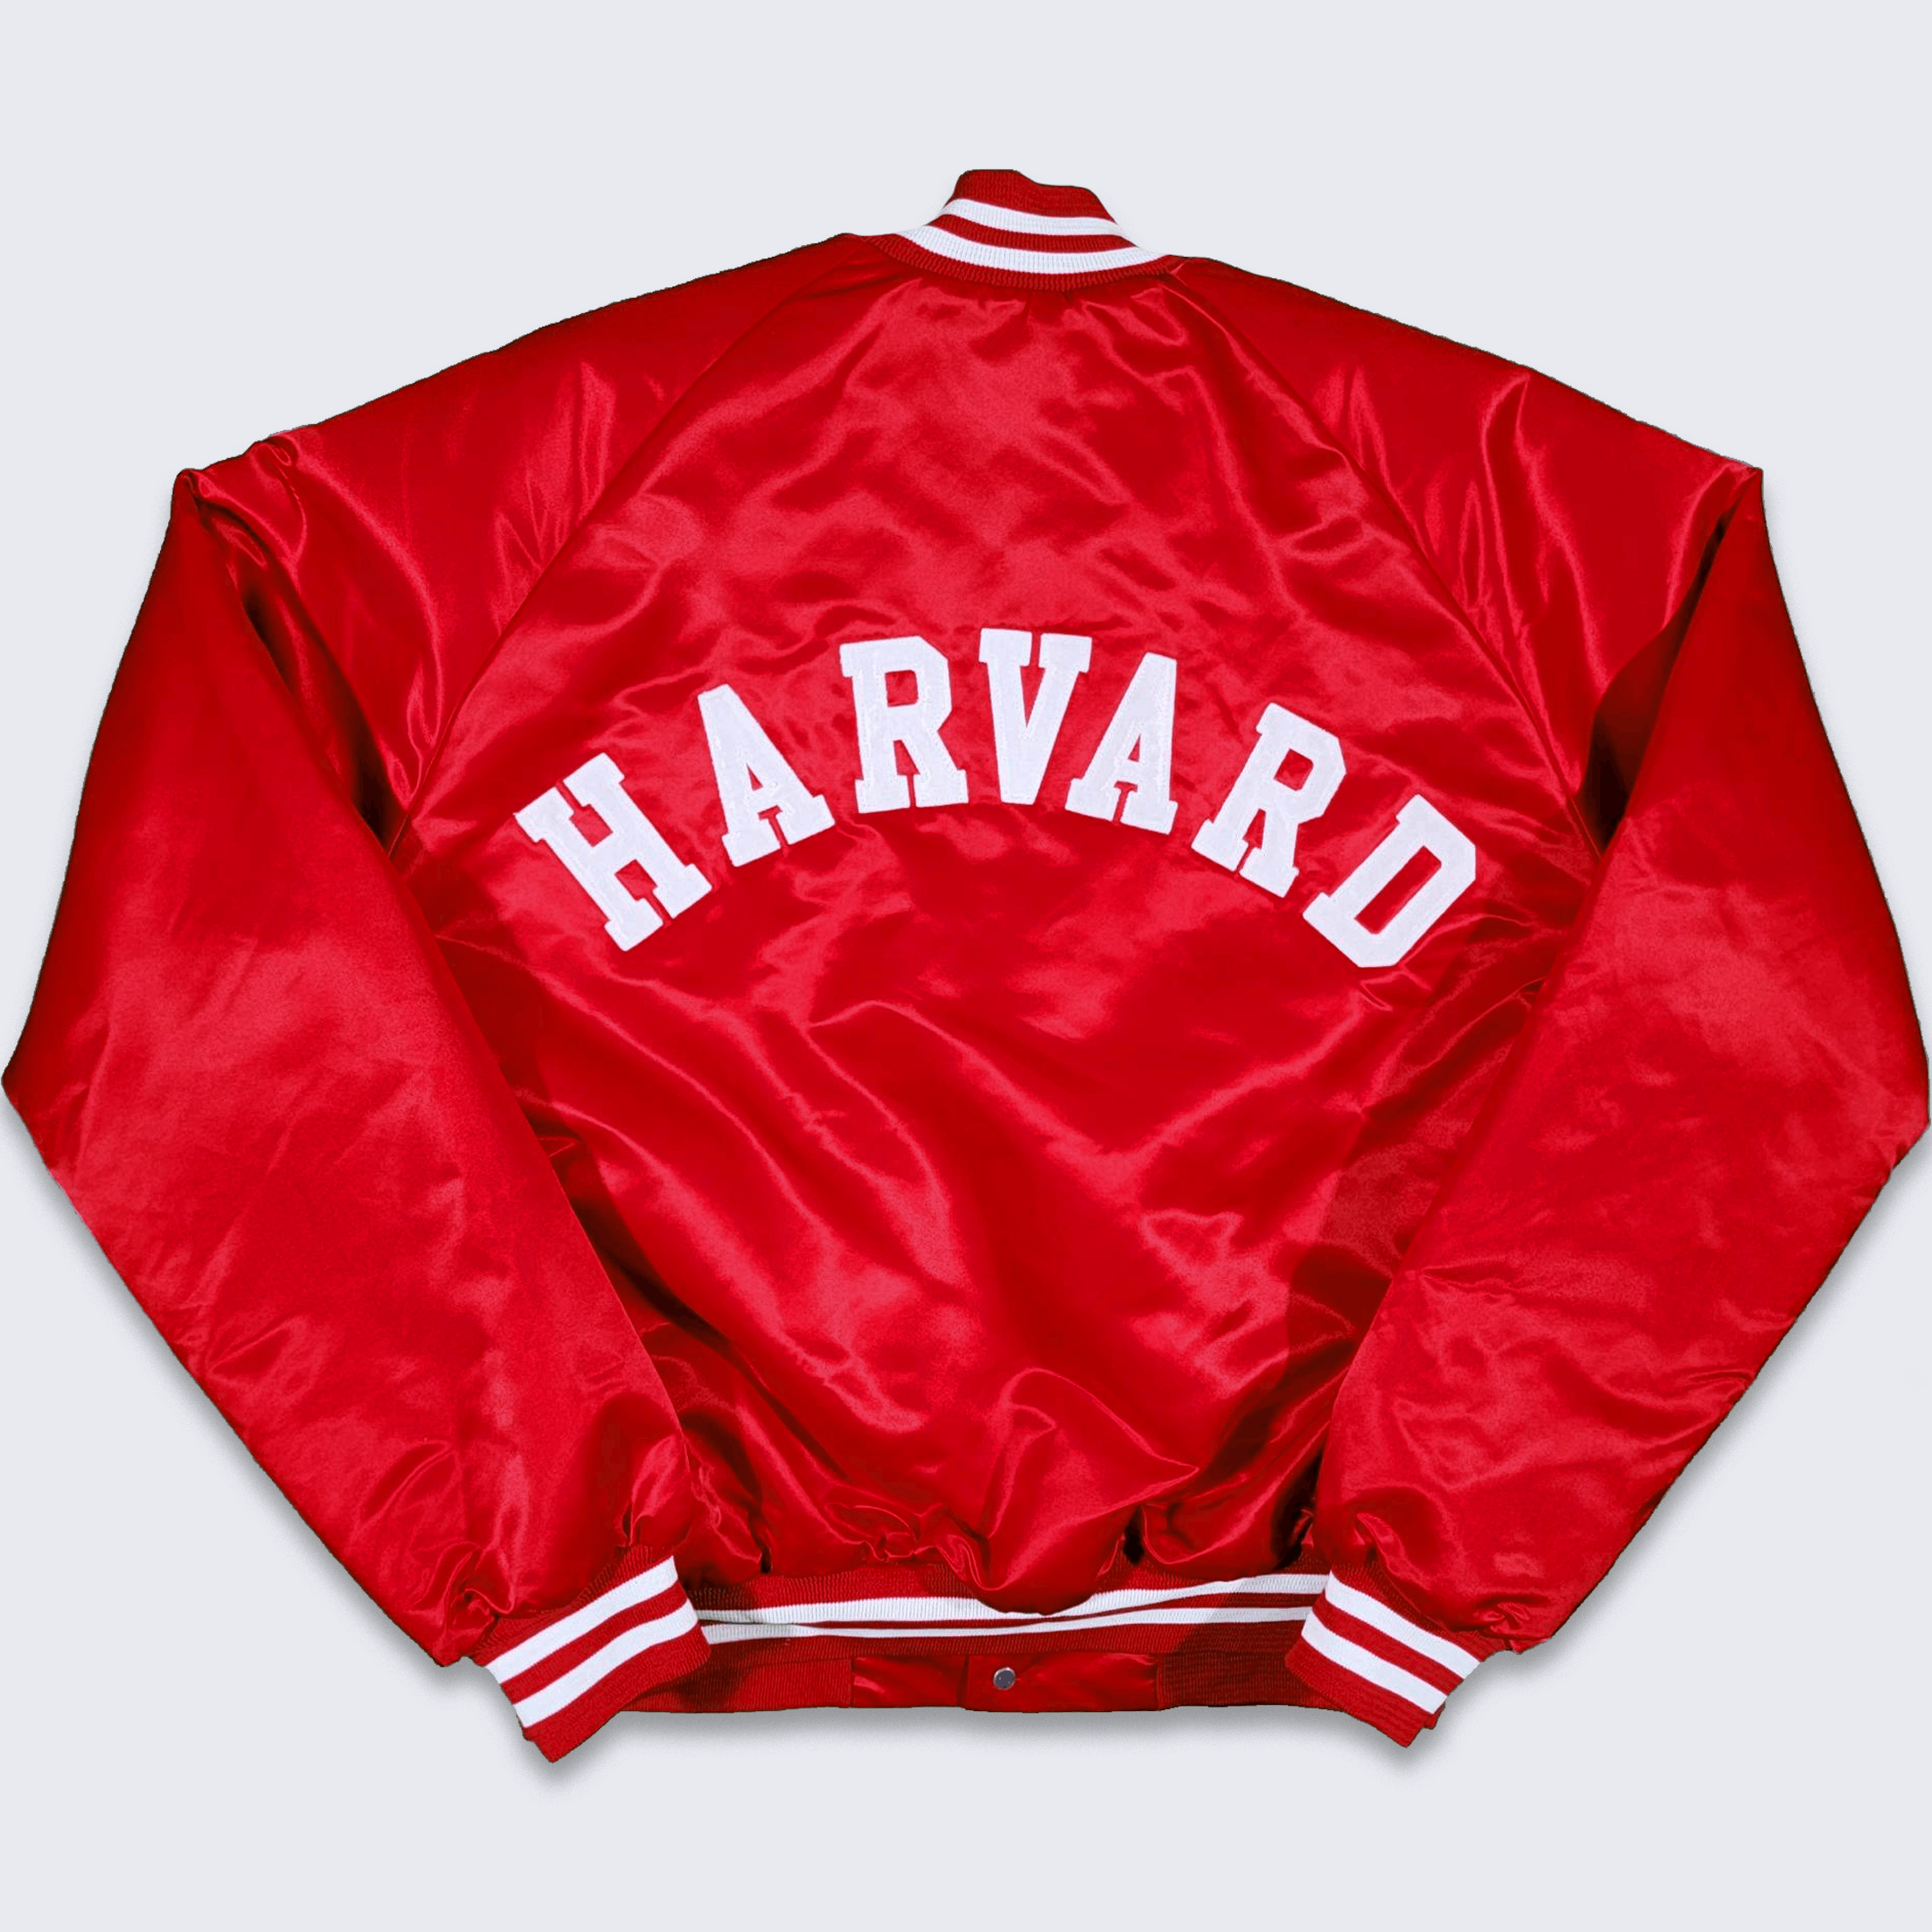 Vintage Harvard Crimson Vintage 80s Chalk Line Satin Bomber Jacket Size US L / EU 52-54 / 3 - 1 Preview